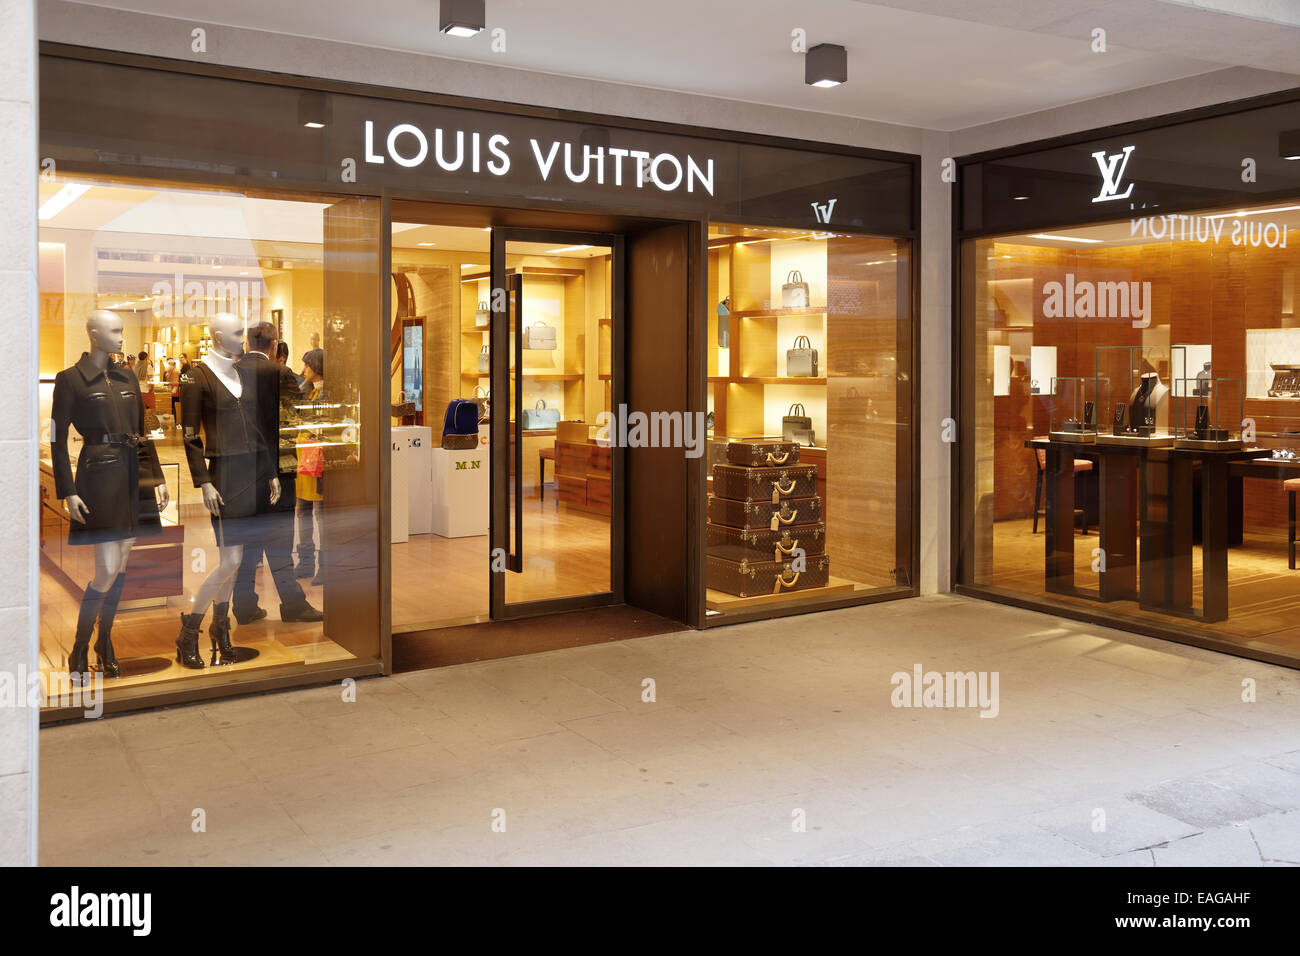 750+ Tienda De Louis Vuitton Fotografías de stock, fotos e imágenes libres  de derechos - iStock